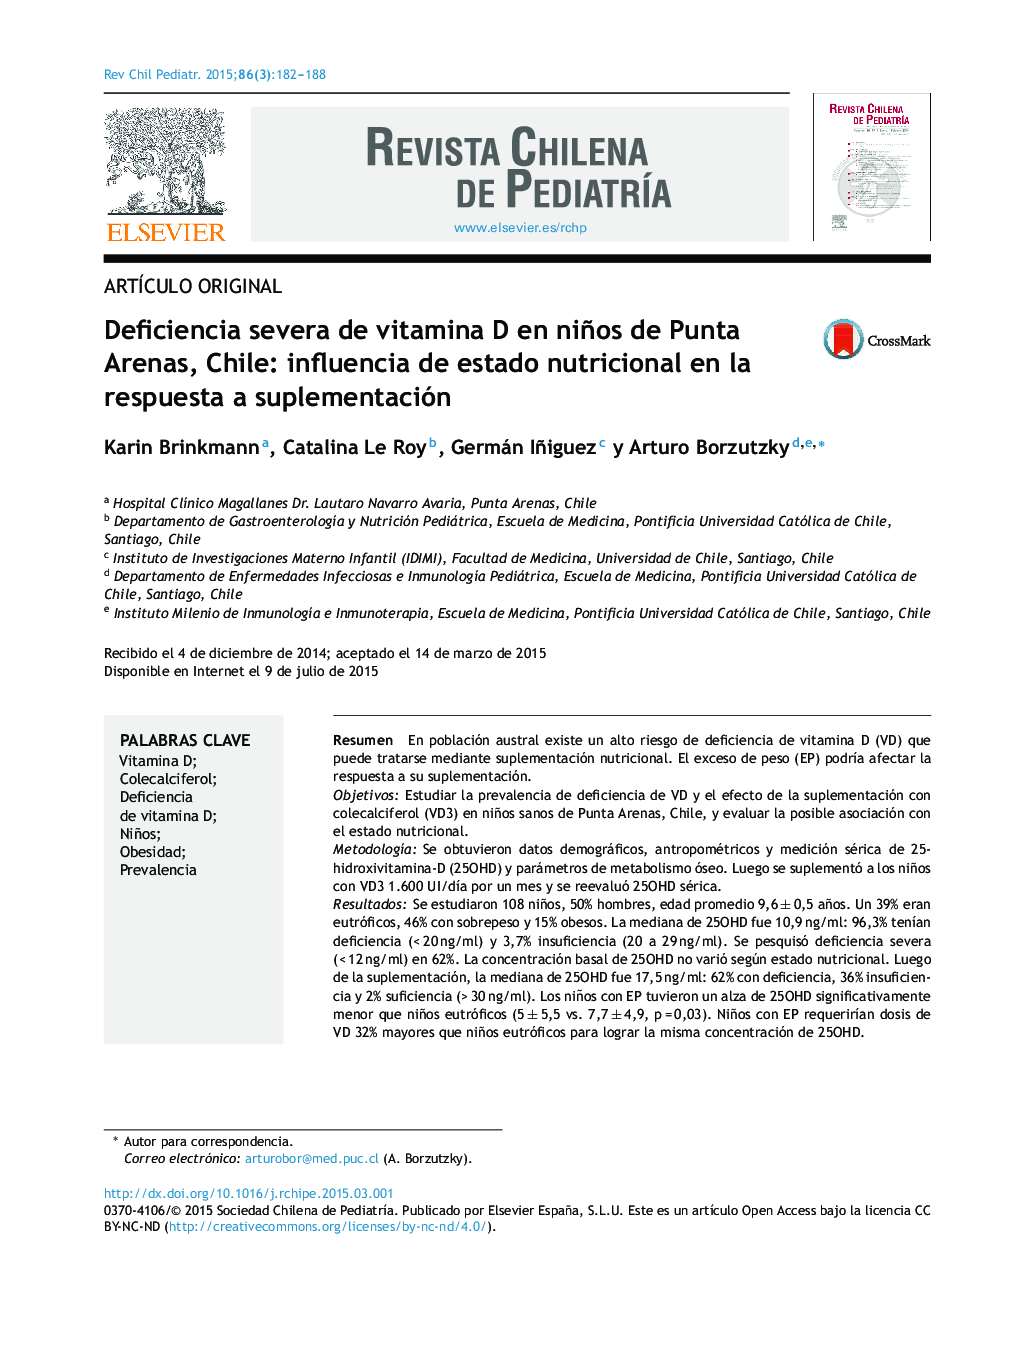 Deficiencia severa de vitamina D en niños de Punta Arenas, Chile: influencia de estado nutricional en la respuesta a suplementación